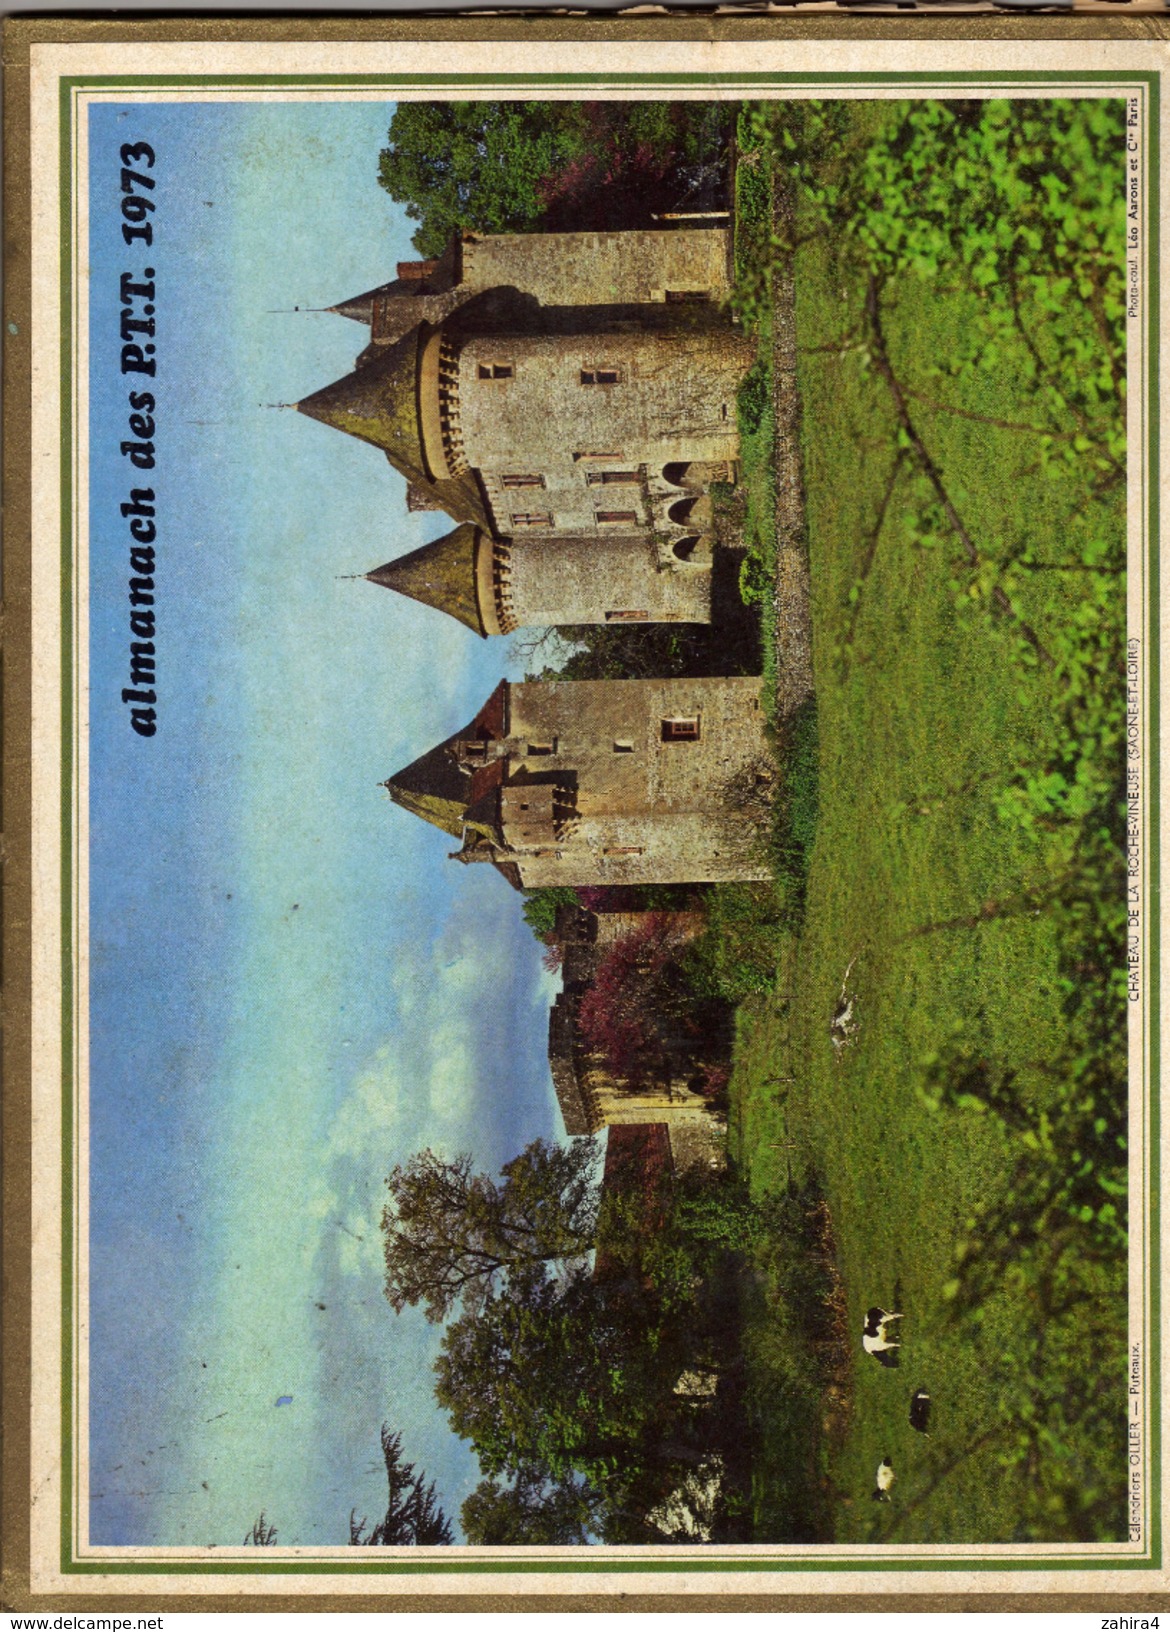 Almanach Des P.T.T. - 12 Pages - Yachting  Les Issambres - Chateau De La Roche-Vineuse (Saone Et Loire) - Gers - Grand Format : 1971-80